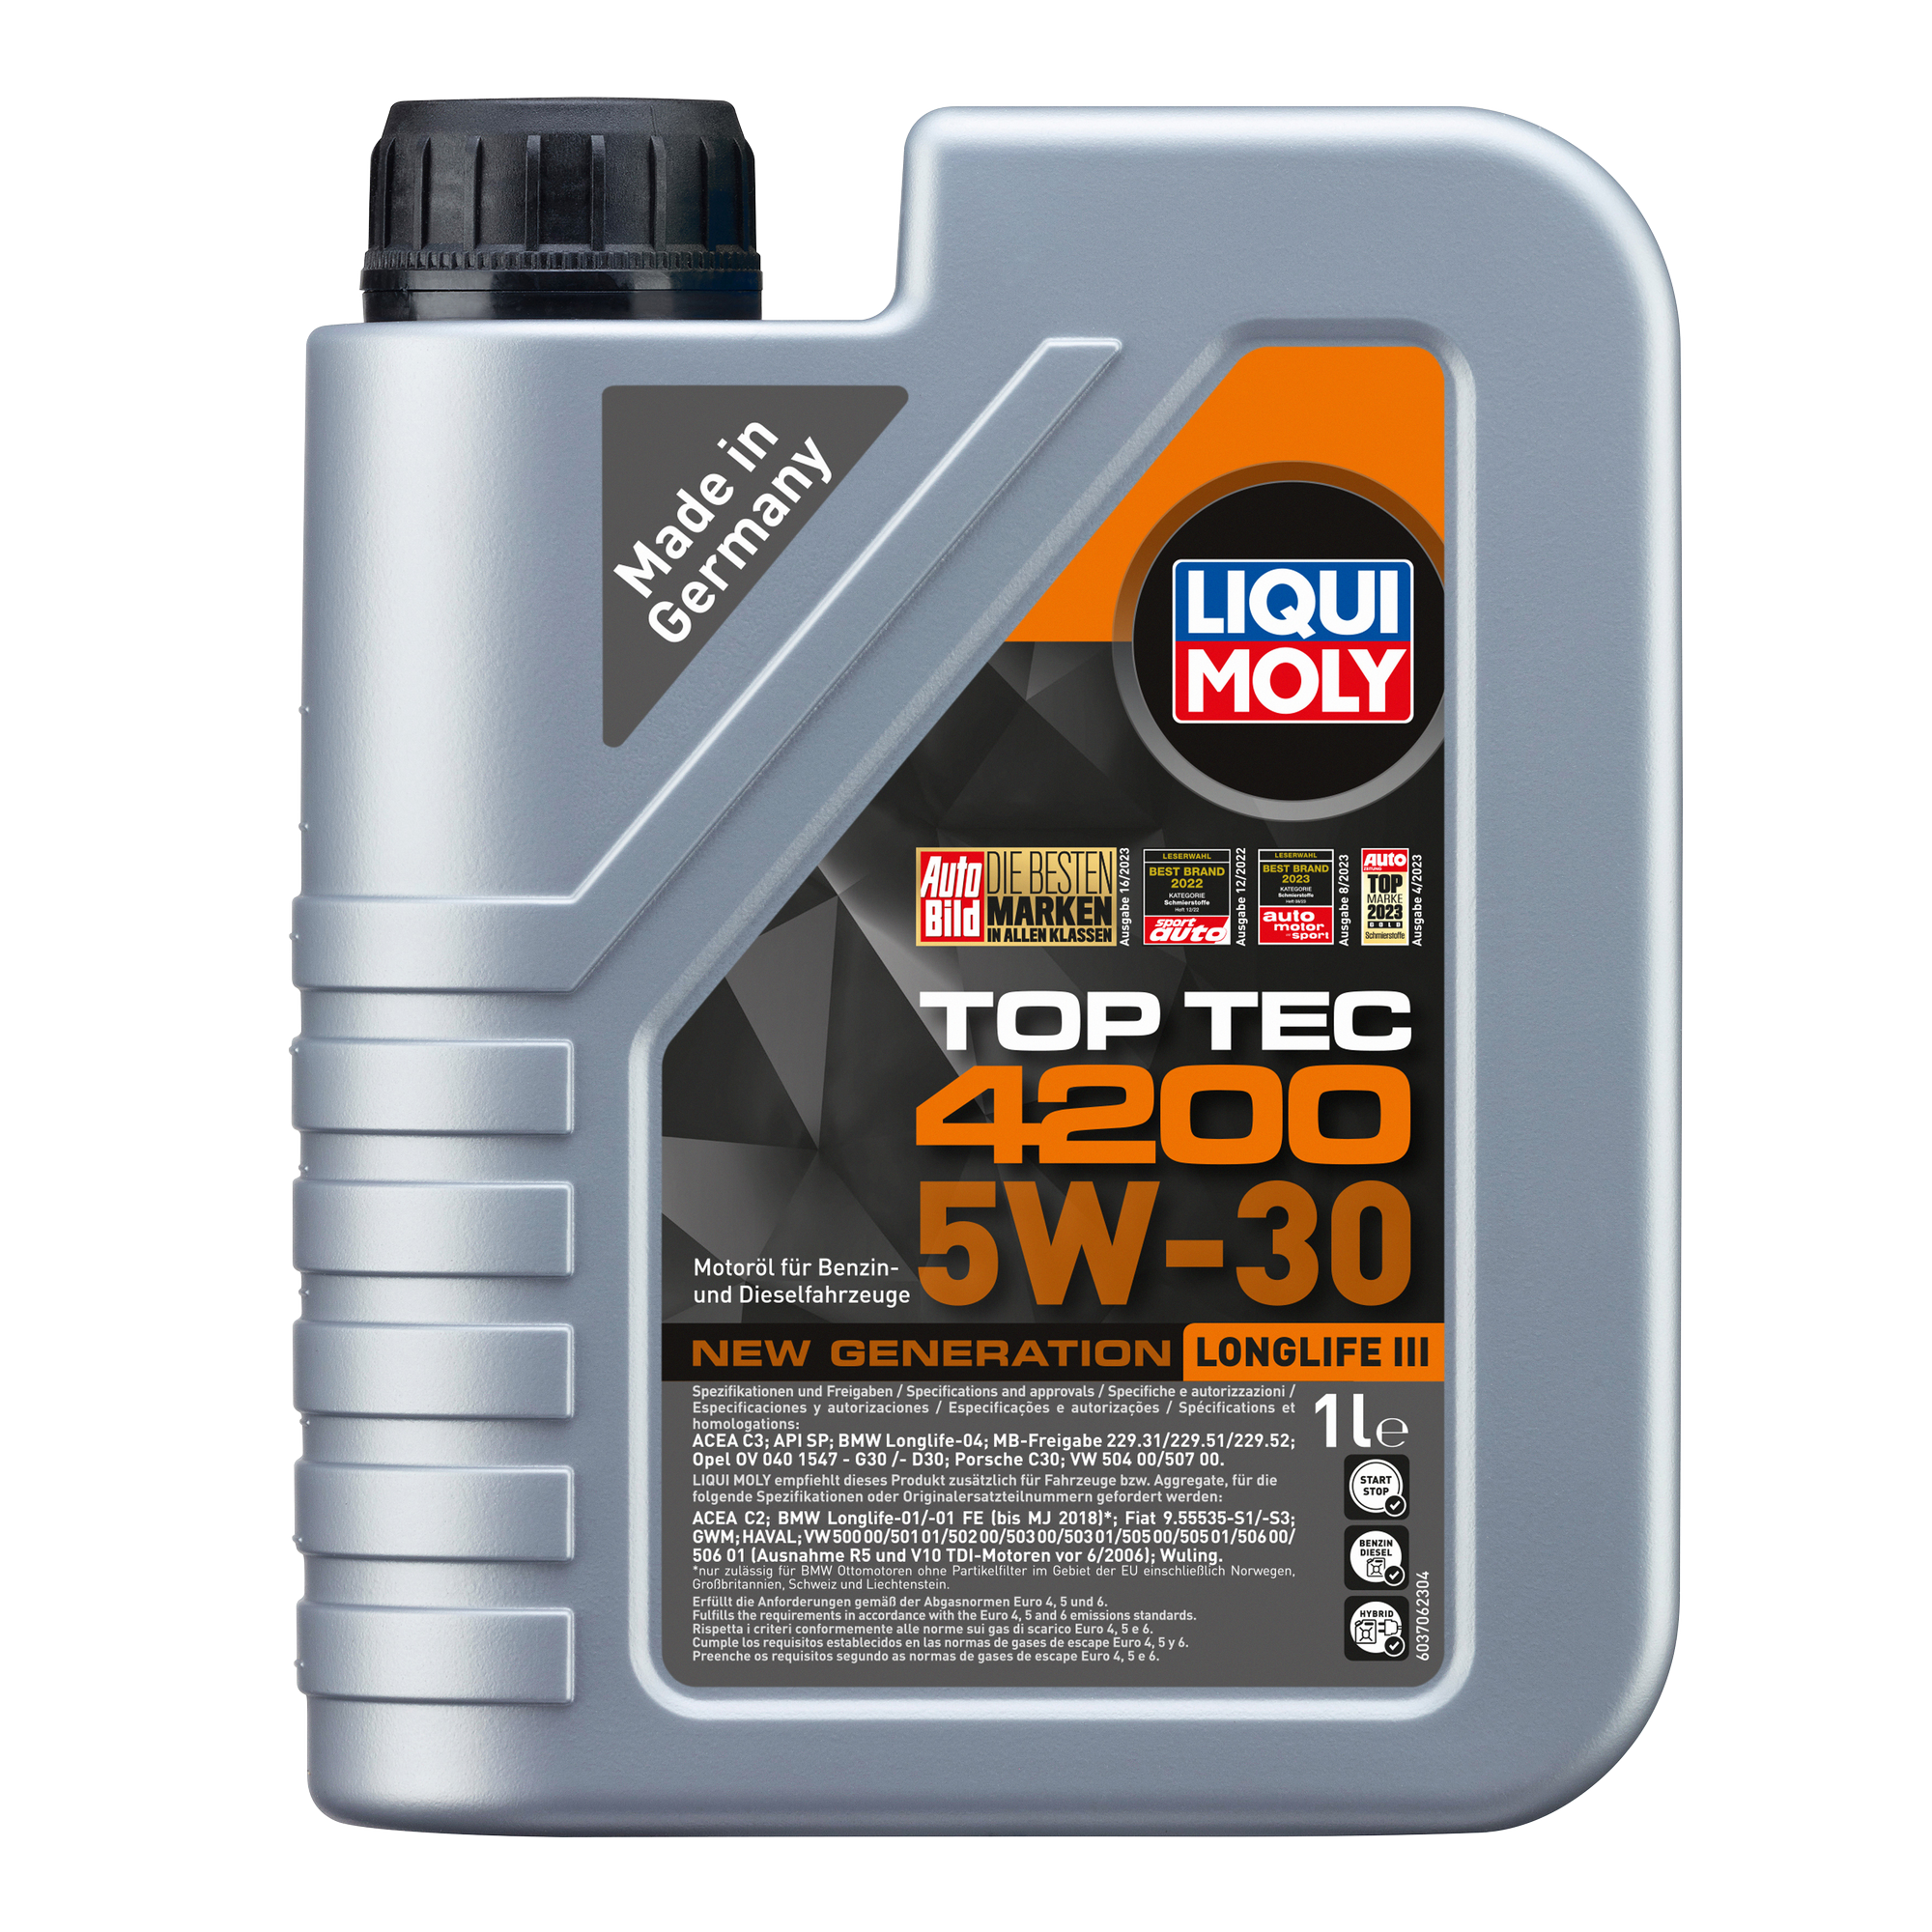 Leichtlauf-Motoröl 'Top Tec 4200 5W-30' 1 l + product picture